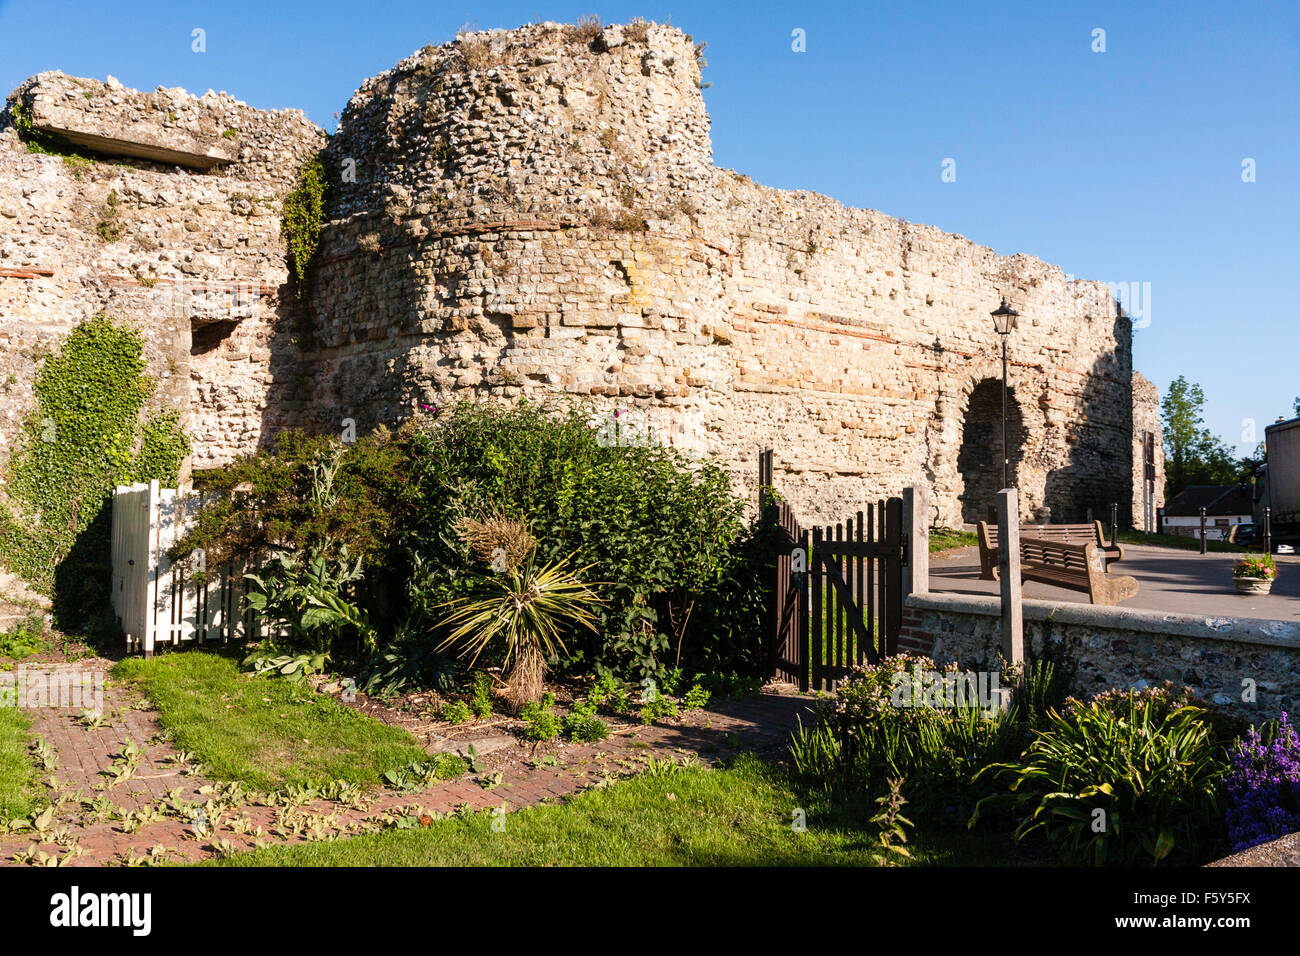 L'Angleterre. 4e siècle romain côte saxonne fort, château de Pevensey. East gateway avec tour de défense et des murs. Ciel bleu. Jardin en premier plan. Banque D'Images